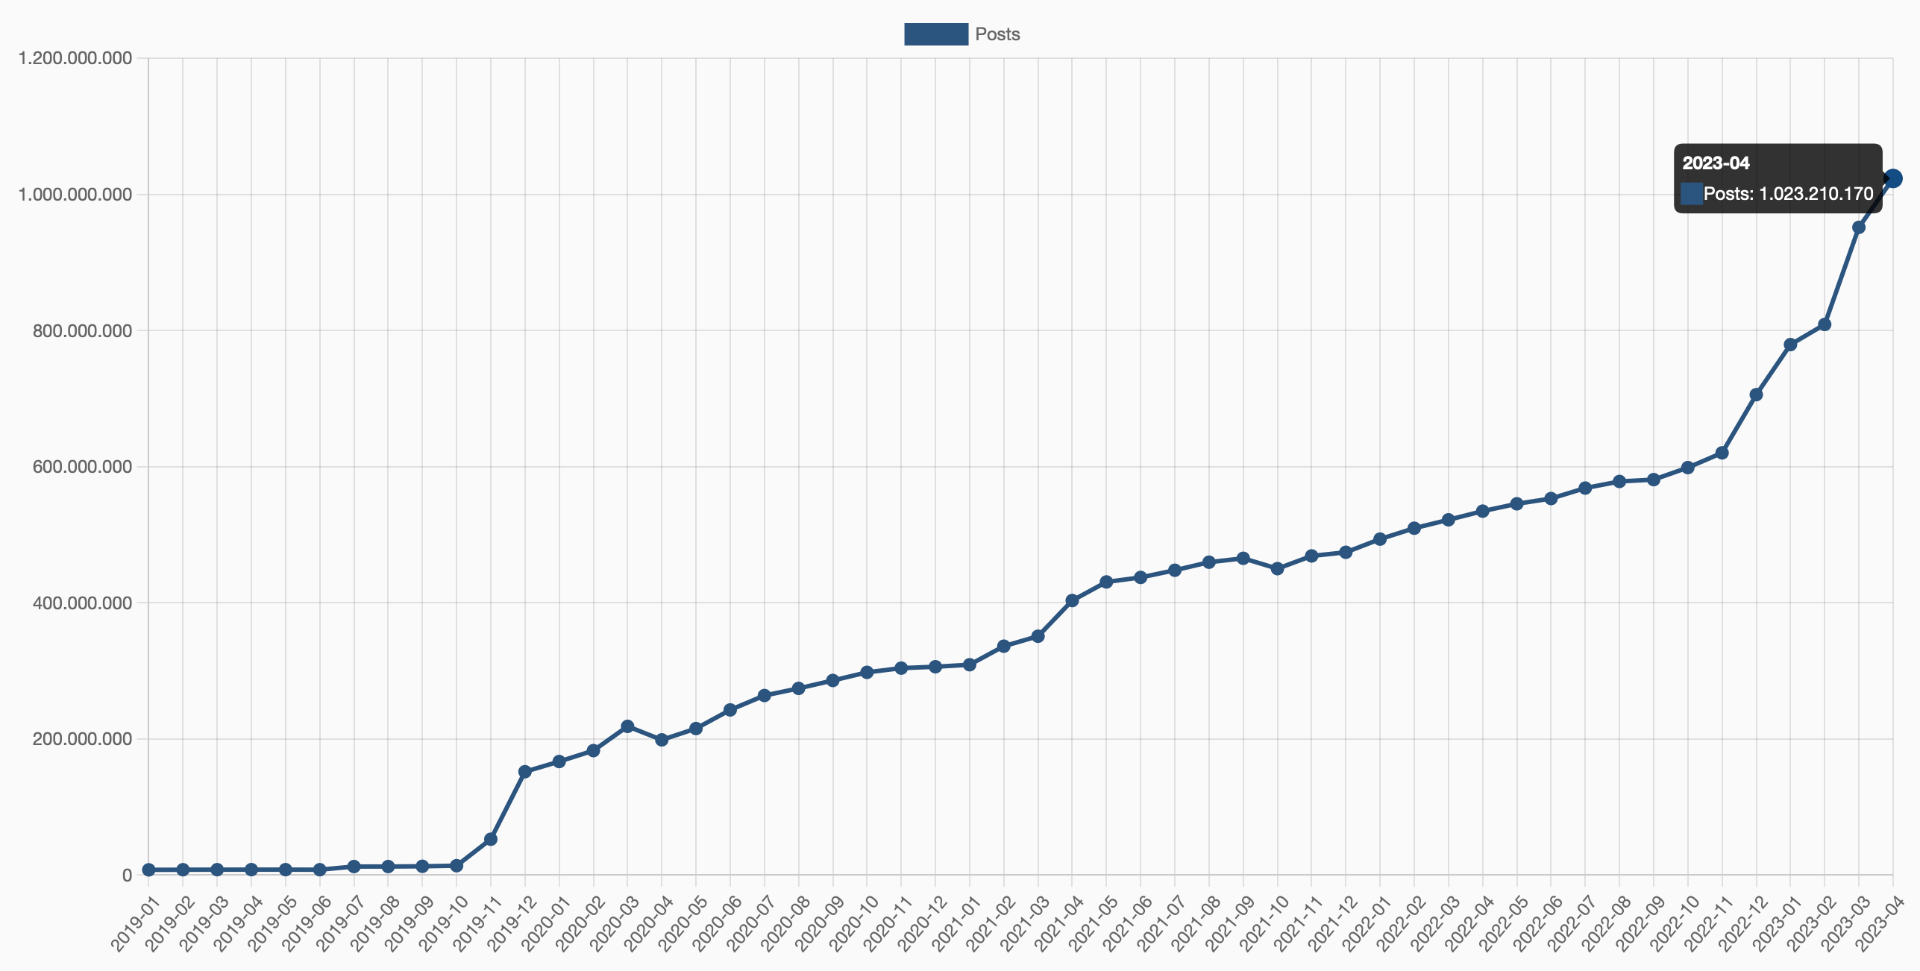 Gráfico do total de posts no fediverso, mostrando a marca de 1 bilhão atingida em abril de 2023.